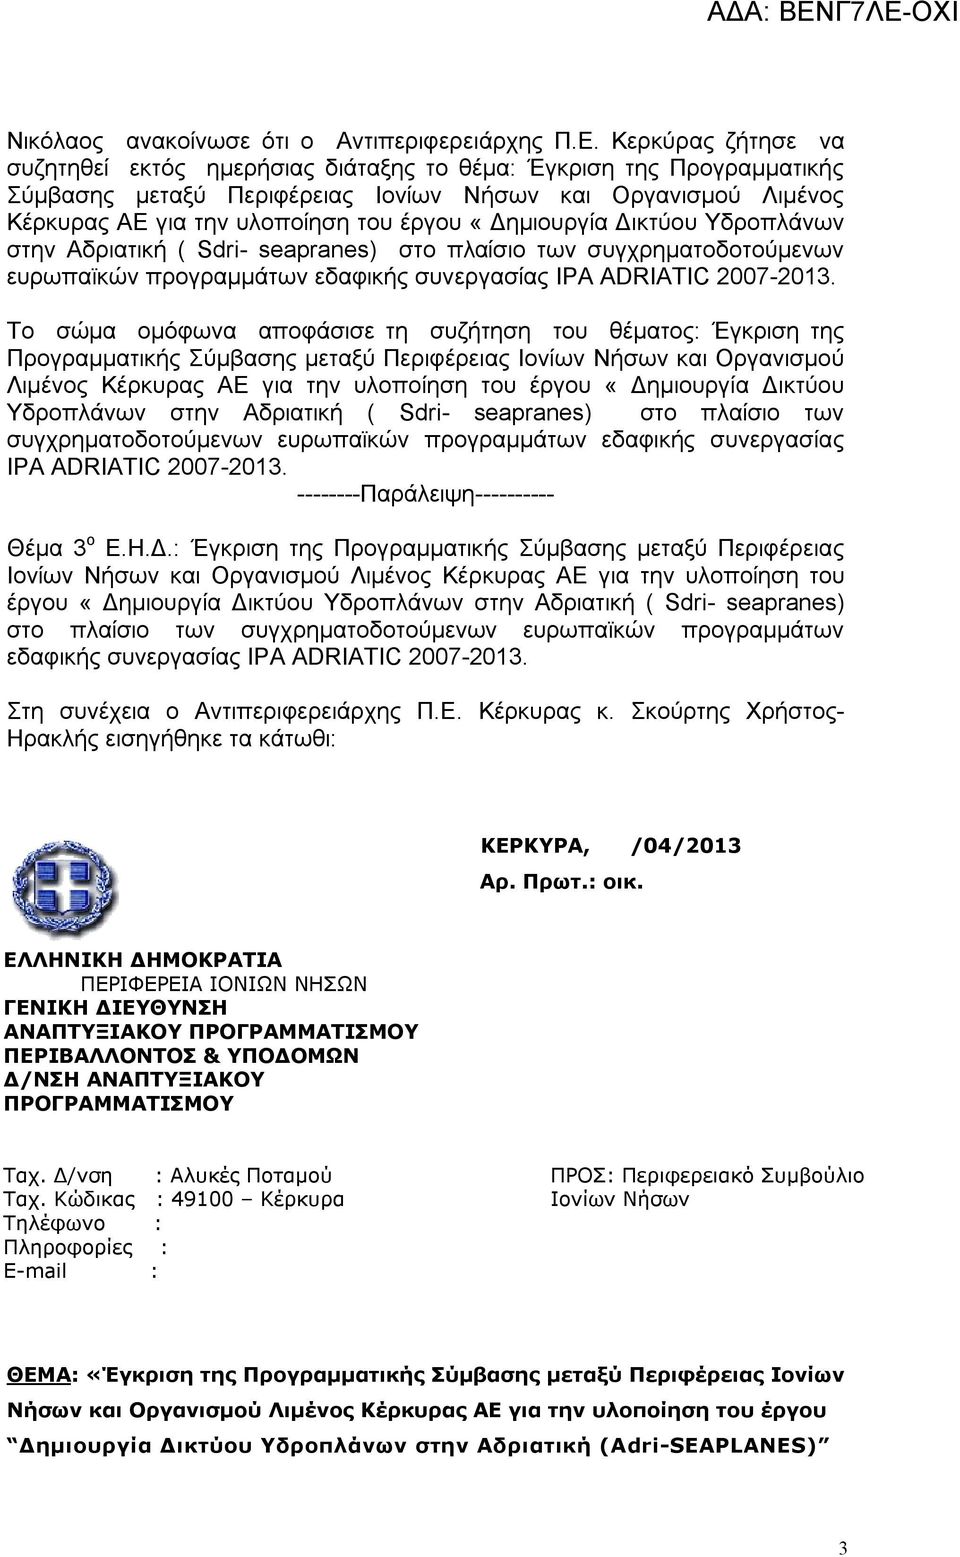 «Δημιουργία Δικτύου Υδροπλάνων στην Αδριατική ( Sdri- seapranes) στο πλαίσιο των συγχρηματοδοτούμενων ευρωπαϊκών προγραμμάτων εδαφικής συνεργασίας ΙΡΑ ADRIATIC 2007-2013.